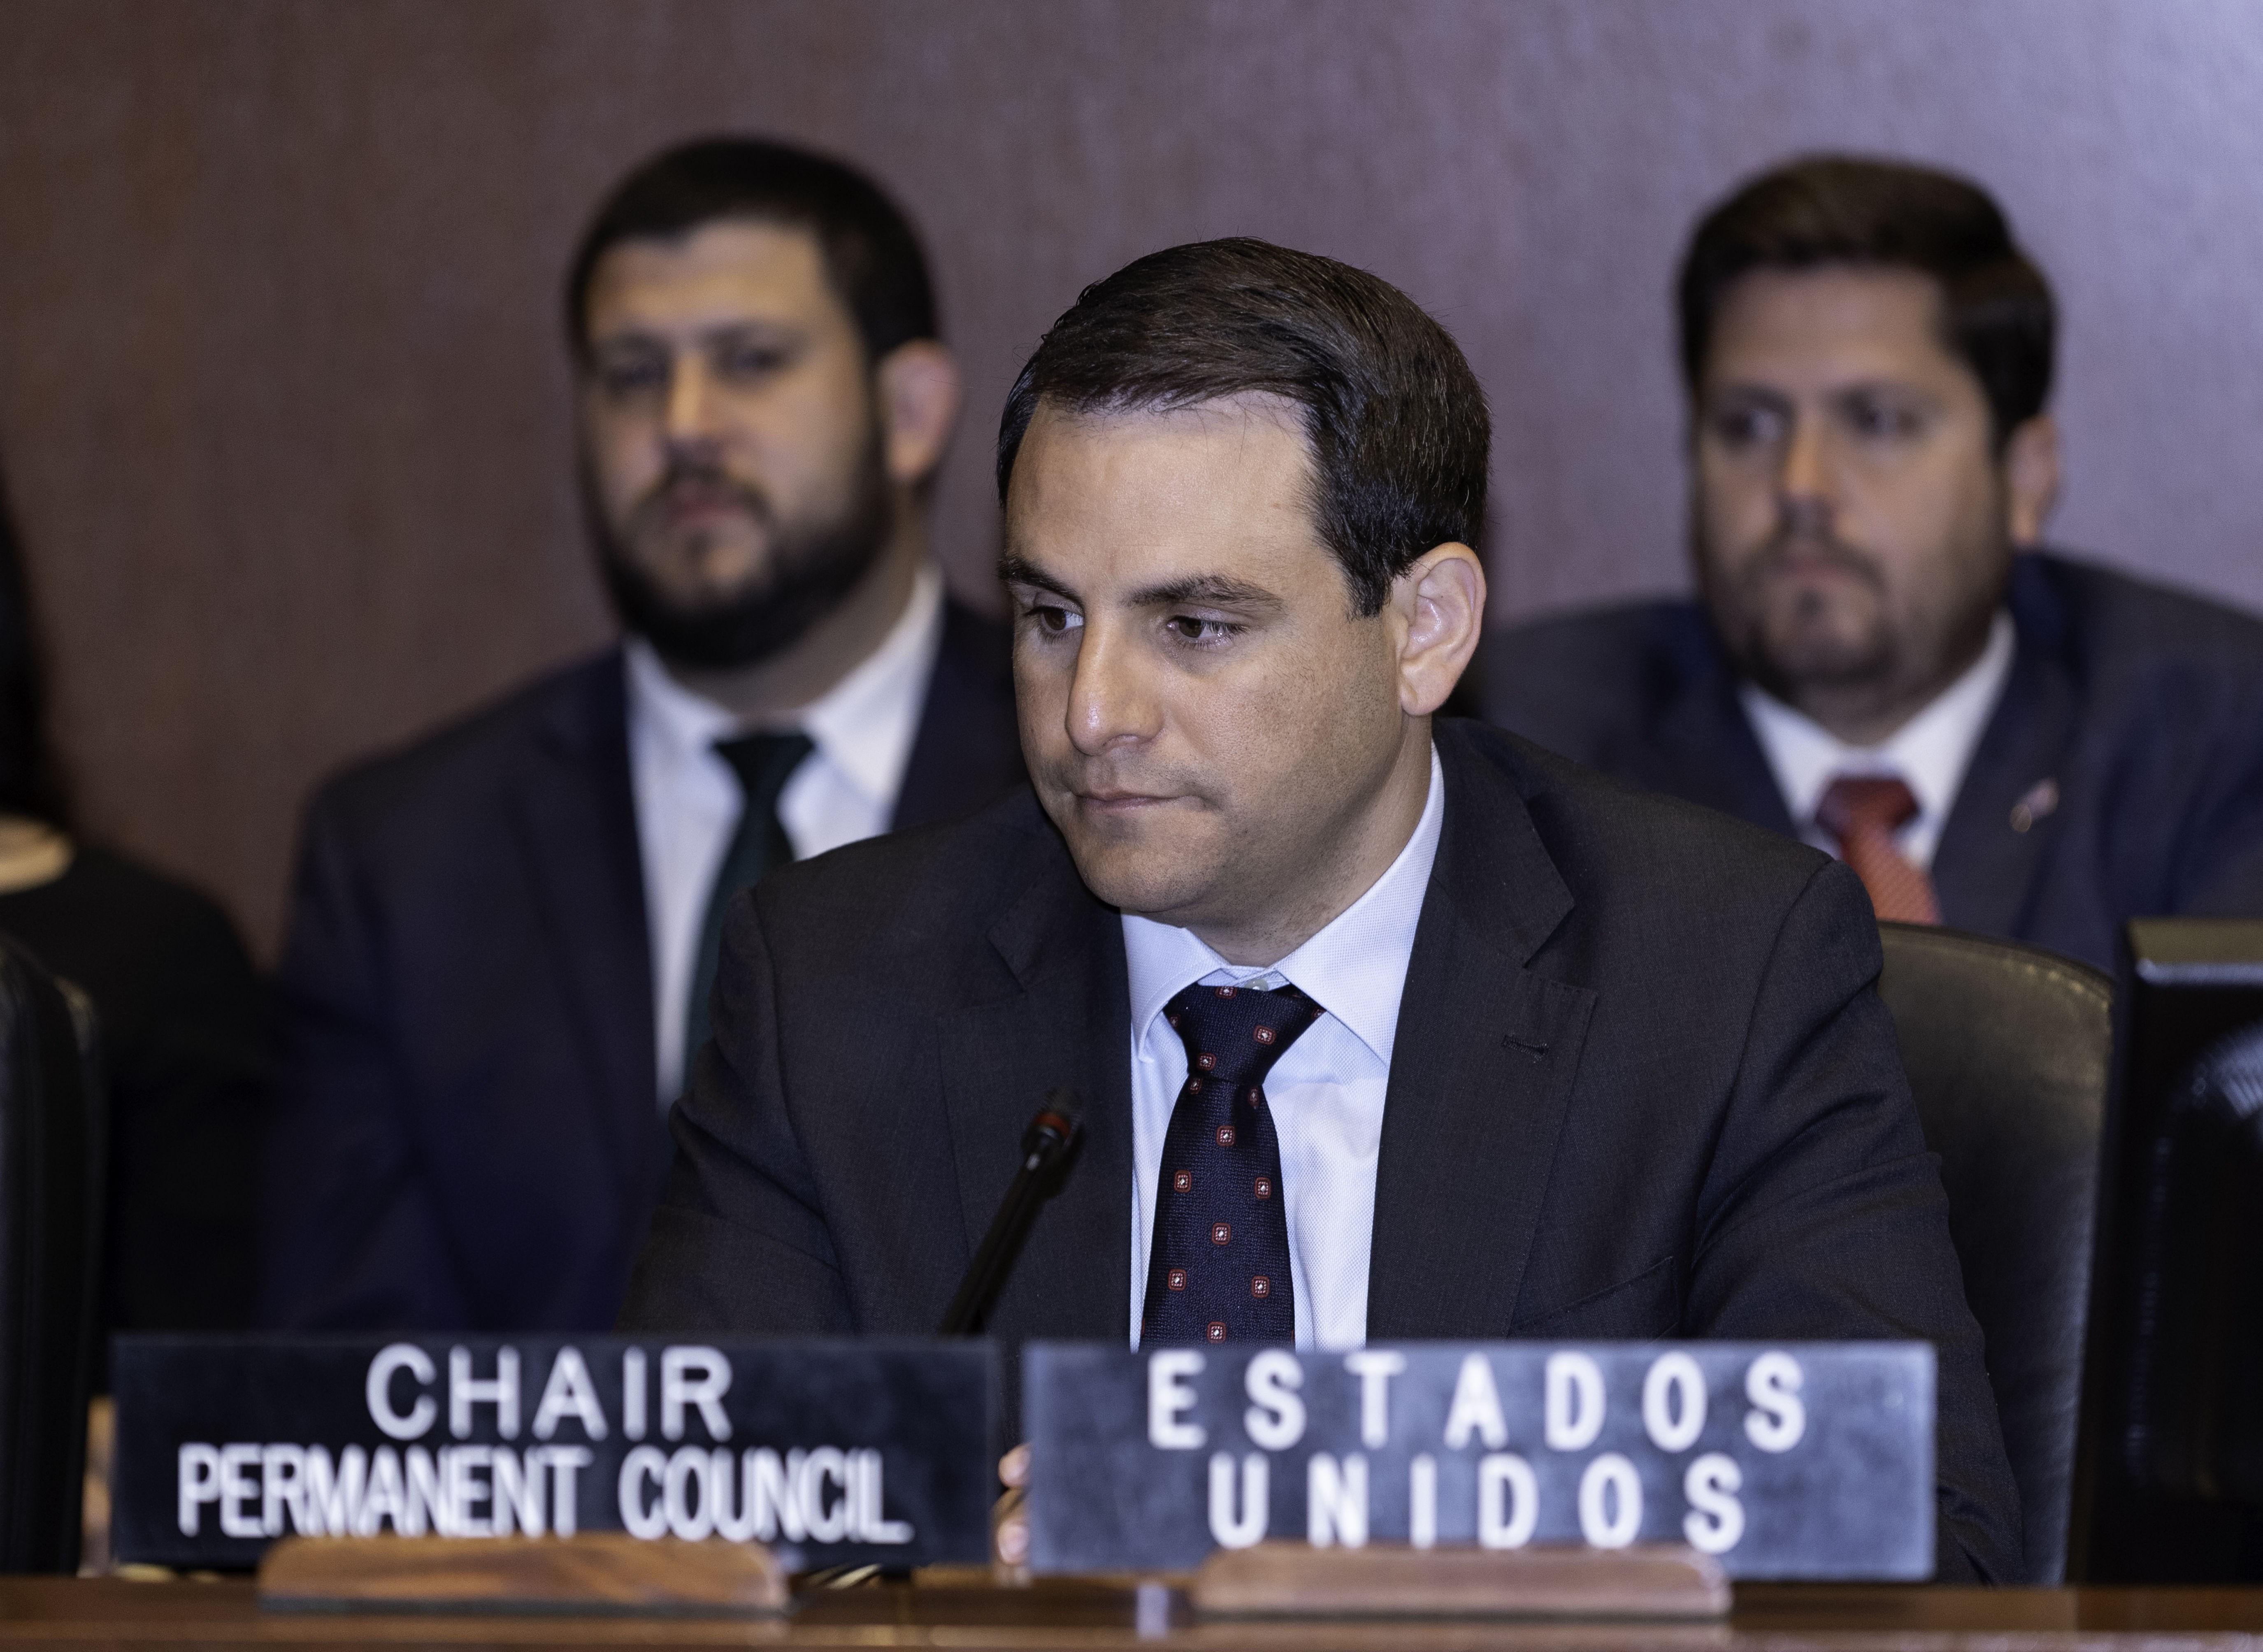 La OEA podría tener los votos para respaldar y aprobar el Tiar en Venezuela (VIDEO)